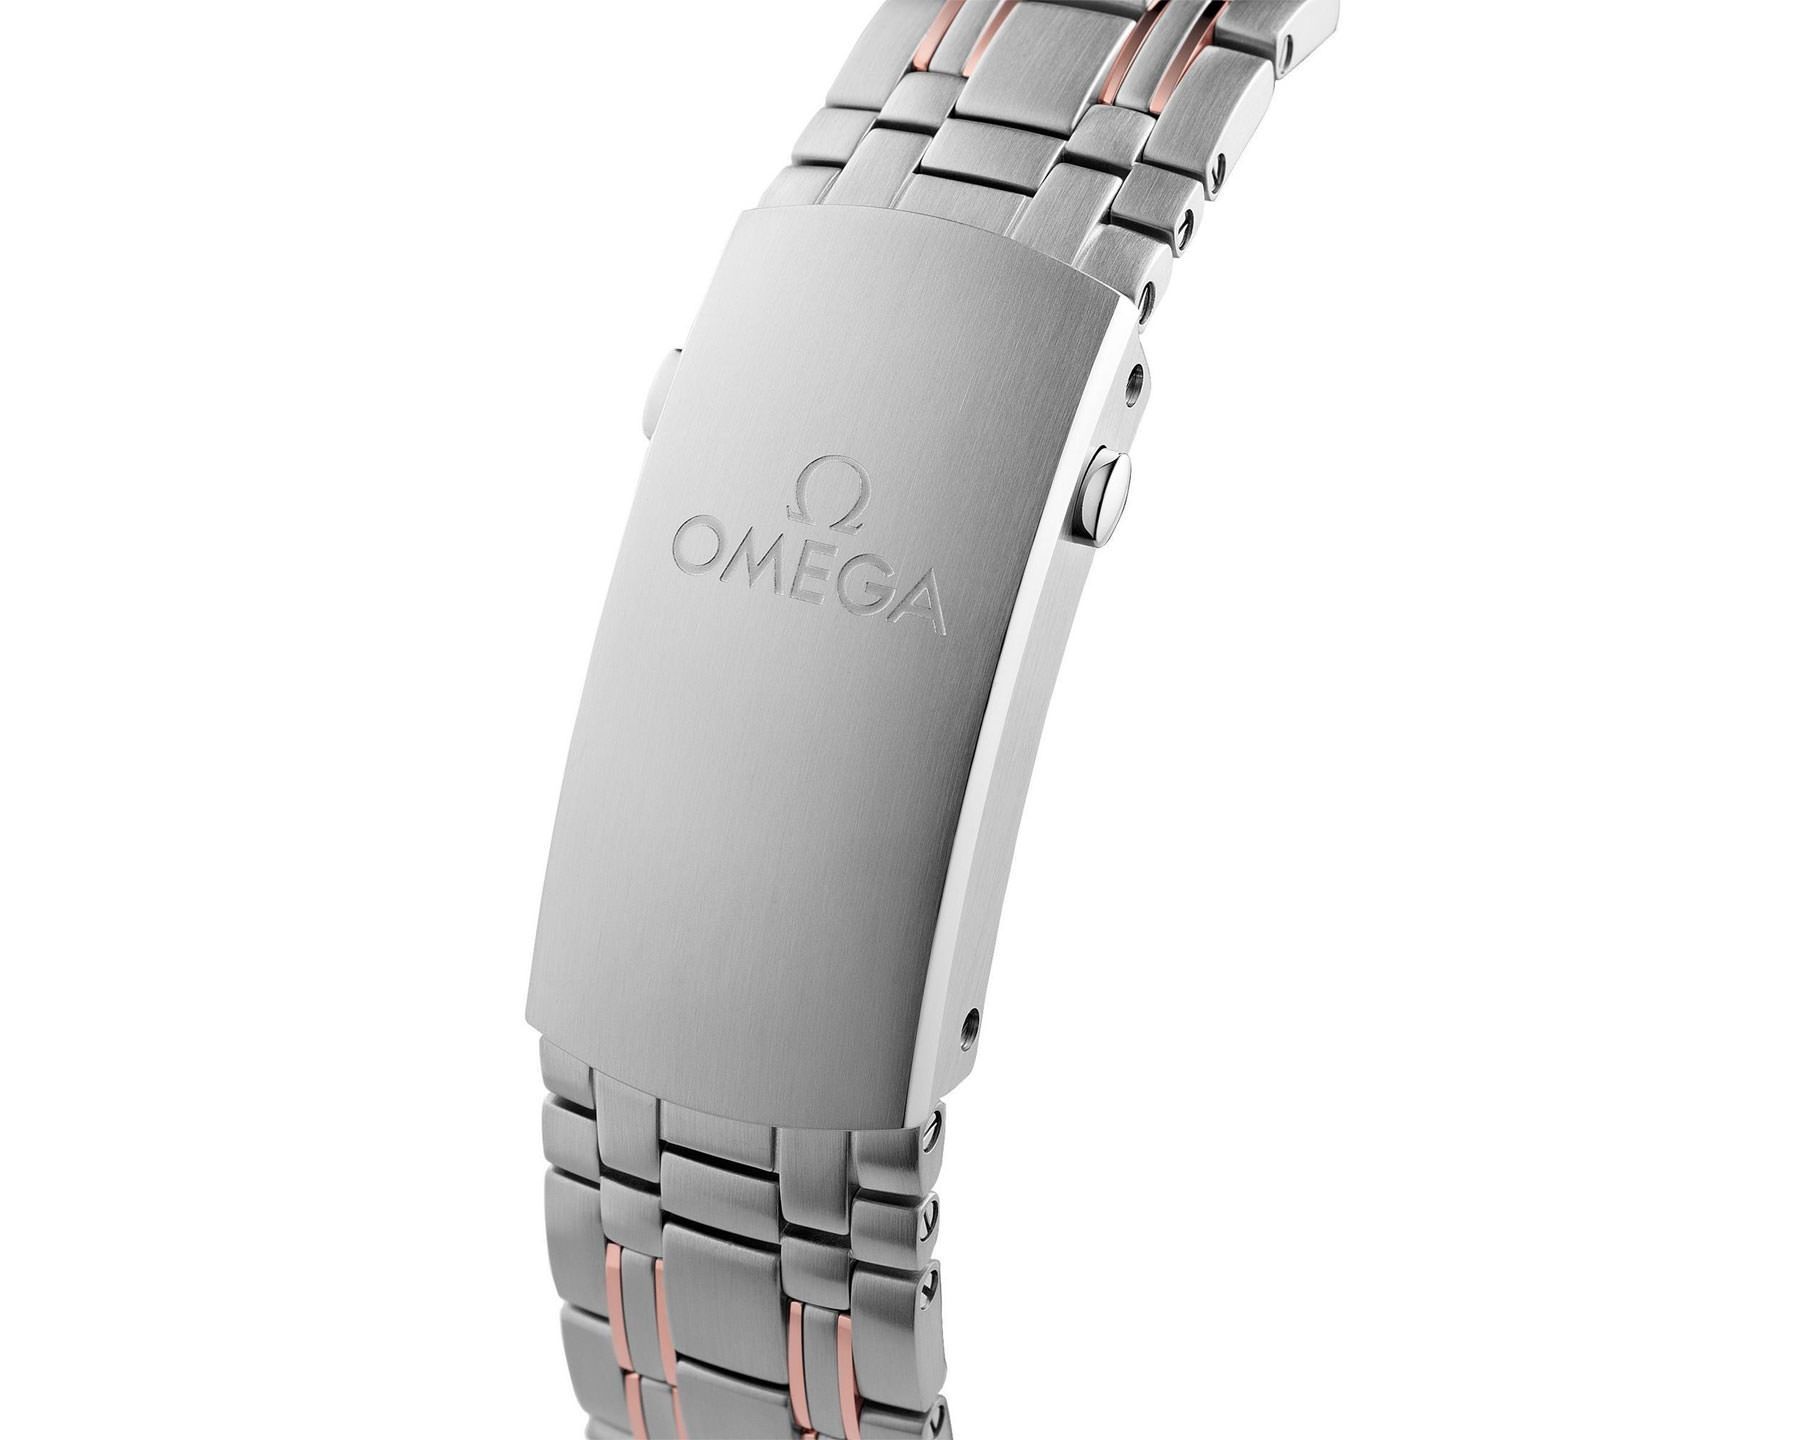 Omega Diver 300M 44 mm Watch in Black Dial For Men - 6